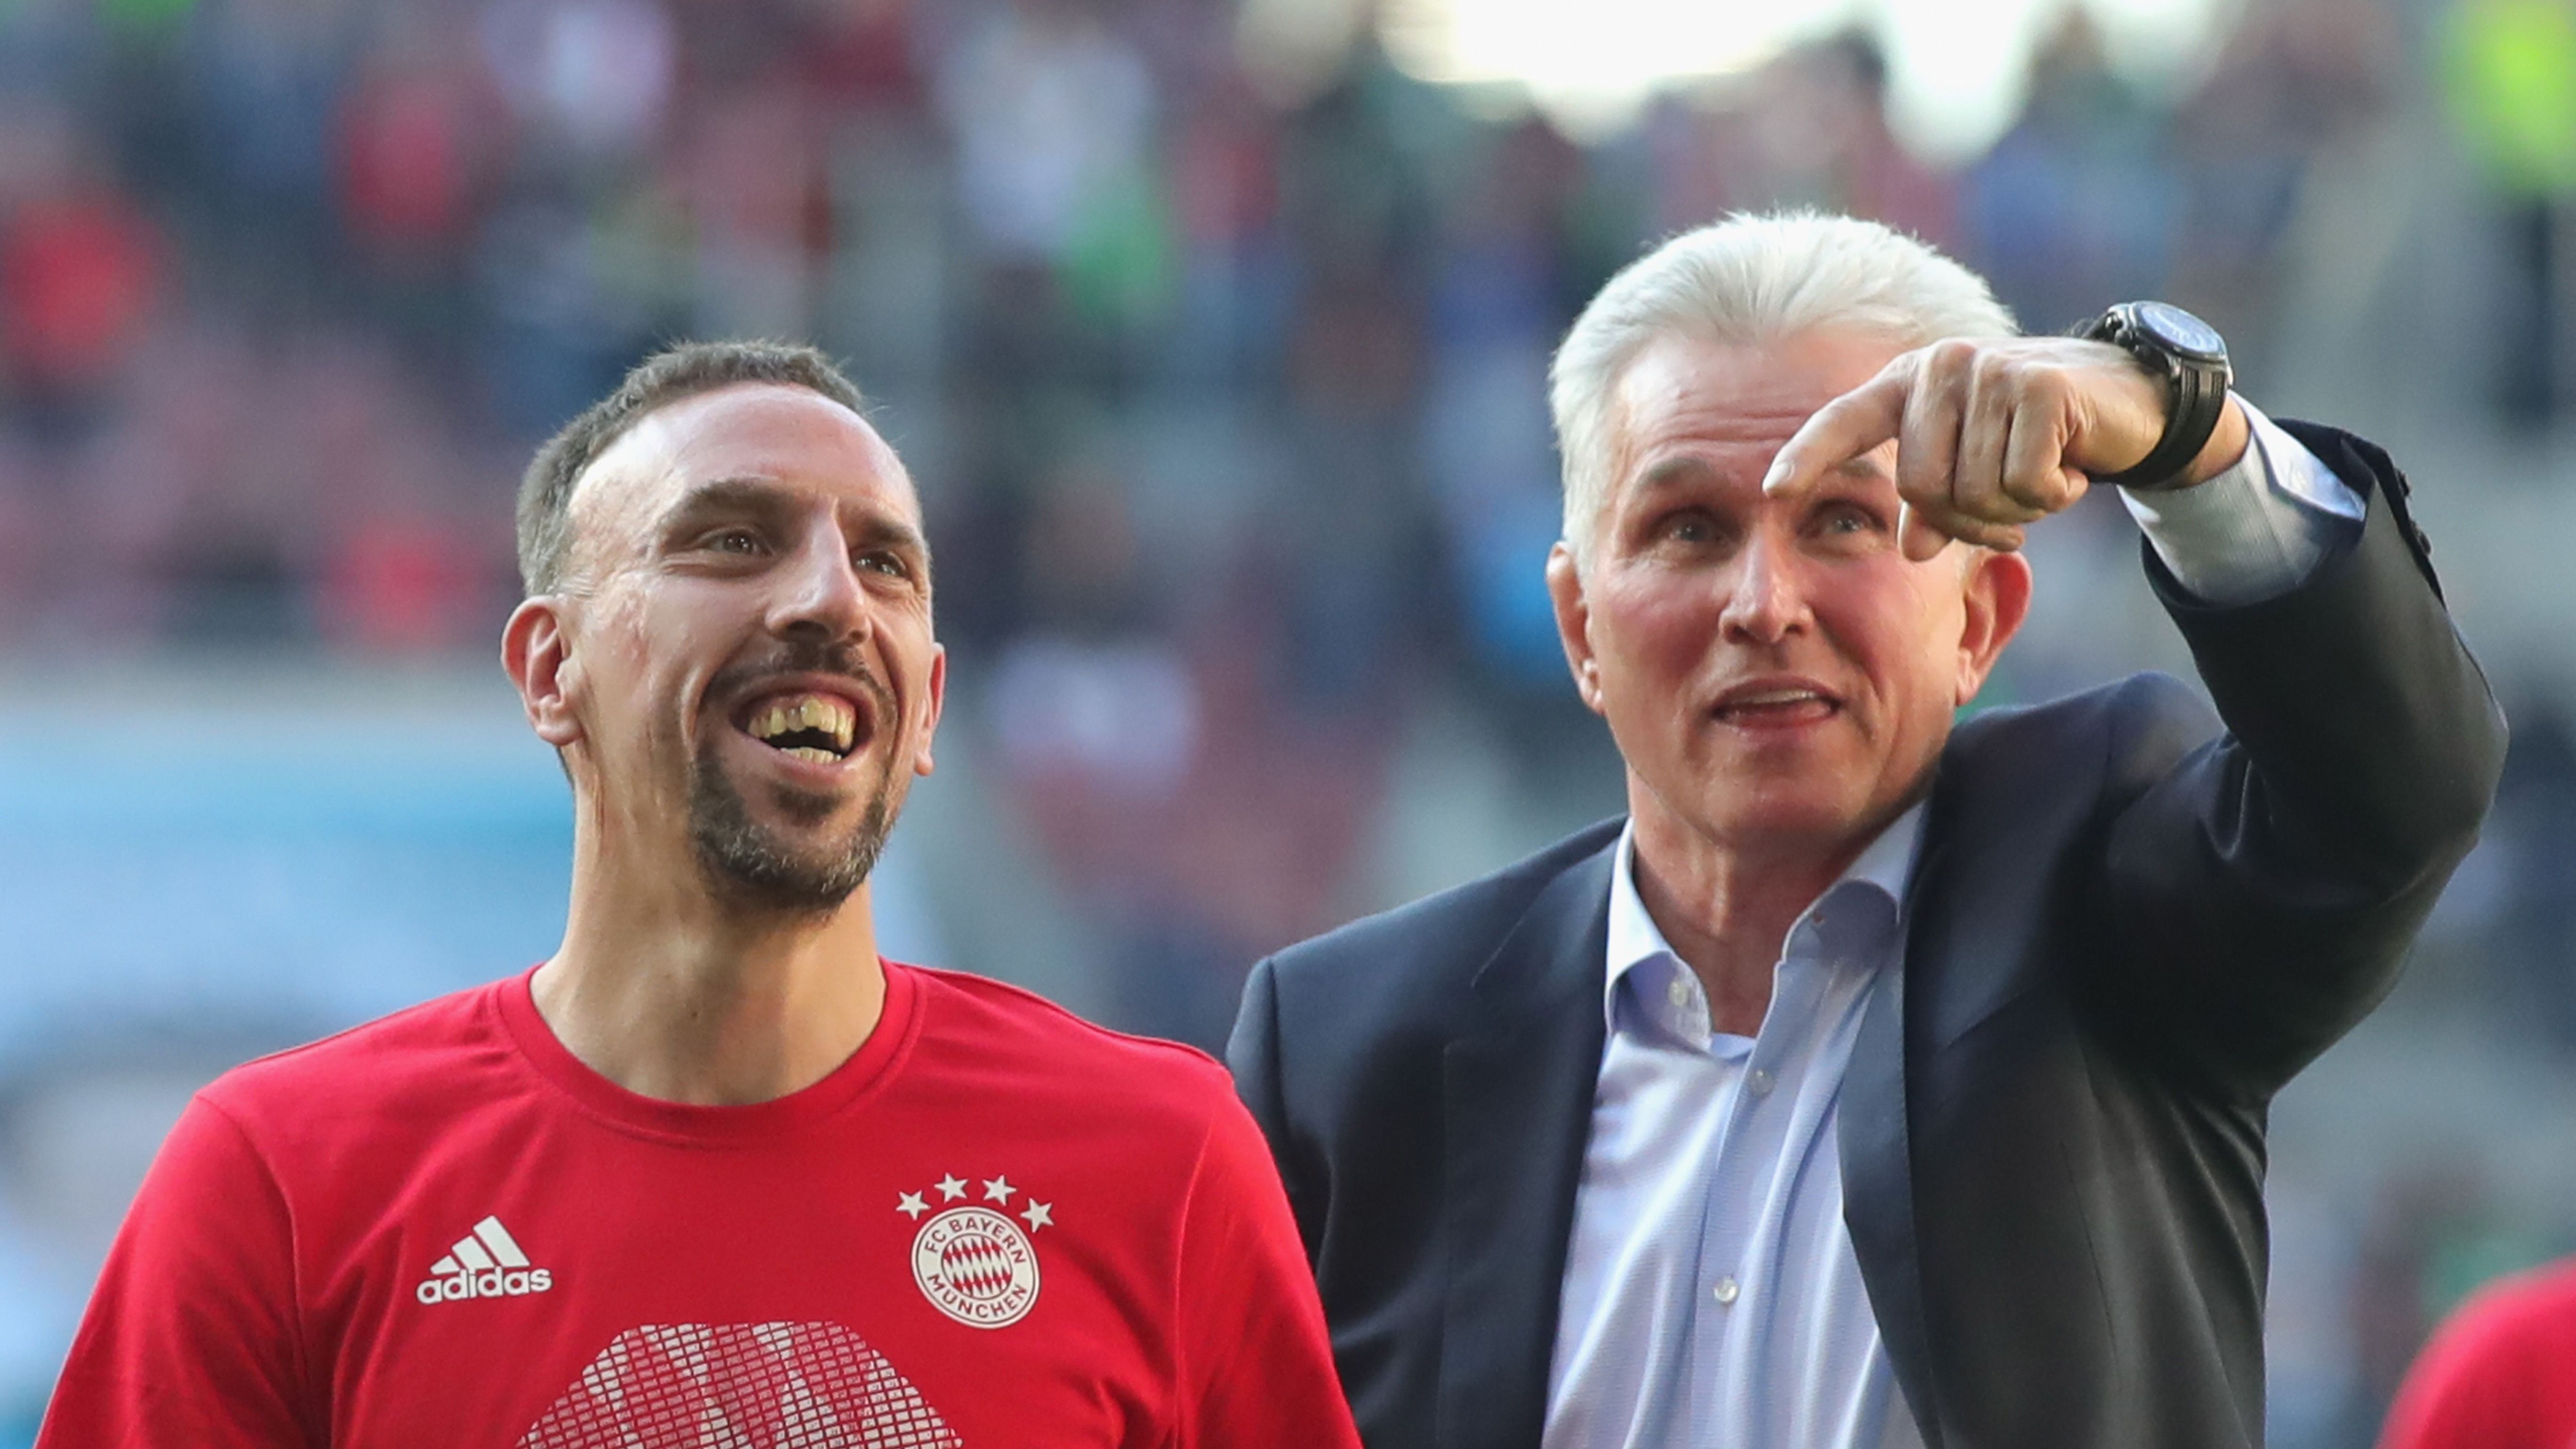 <strong>3. FC Bayern 2017/18 - 29. Spieltag</strong><br>Die Saison beginnt schleppend, Carlo Ancelotti wird im Herbst 2017 entlassen. Jupp Heynckes übernimmt ein letztes Mal - und führt die Bayern wie einen Orkan durch die Bundesliga. Schon am 29. Spieltag ist nach einem 4:1 in Augsburg alles klar.